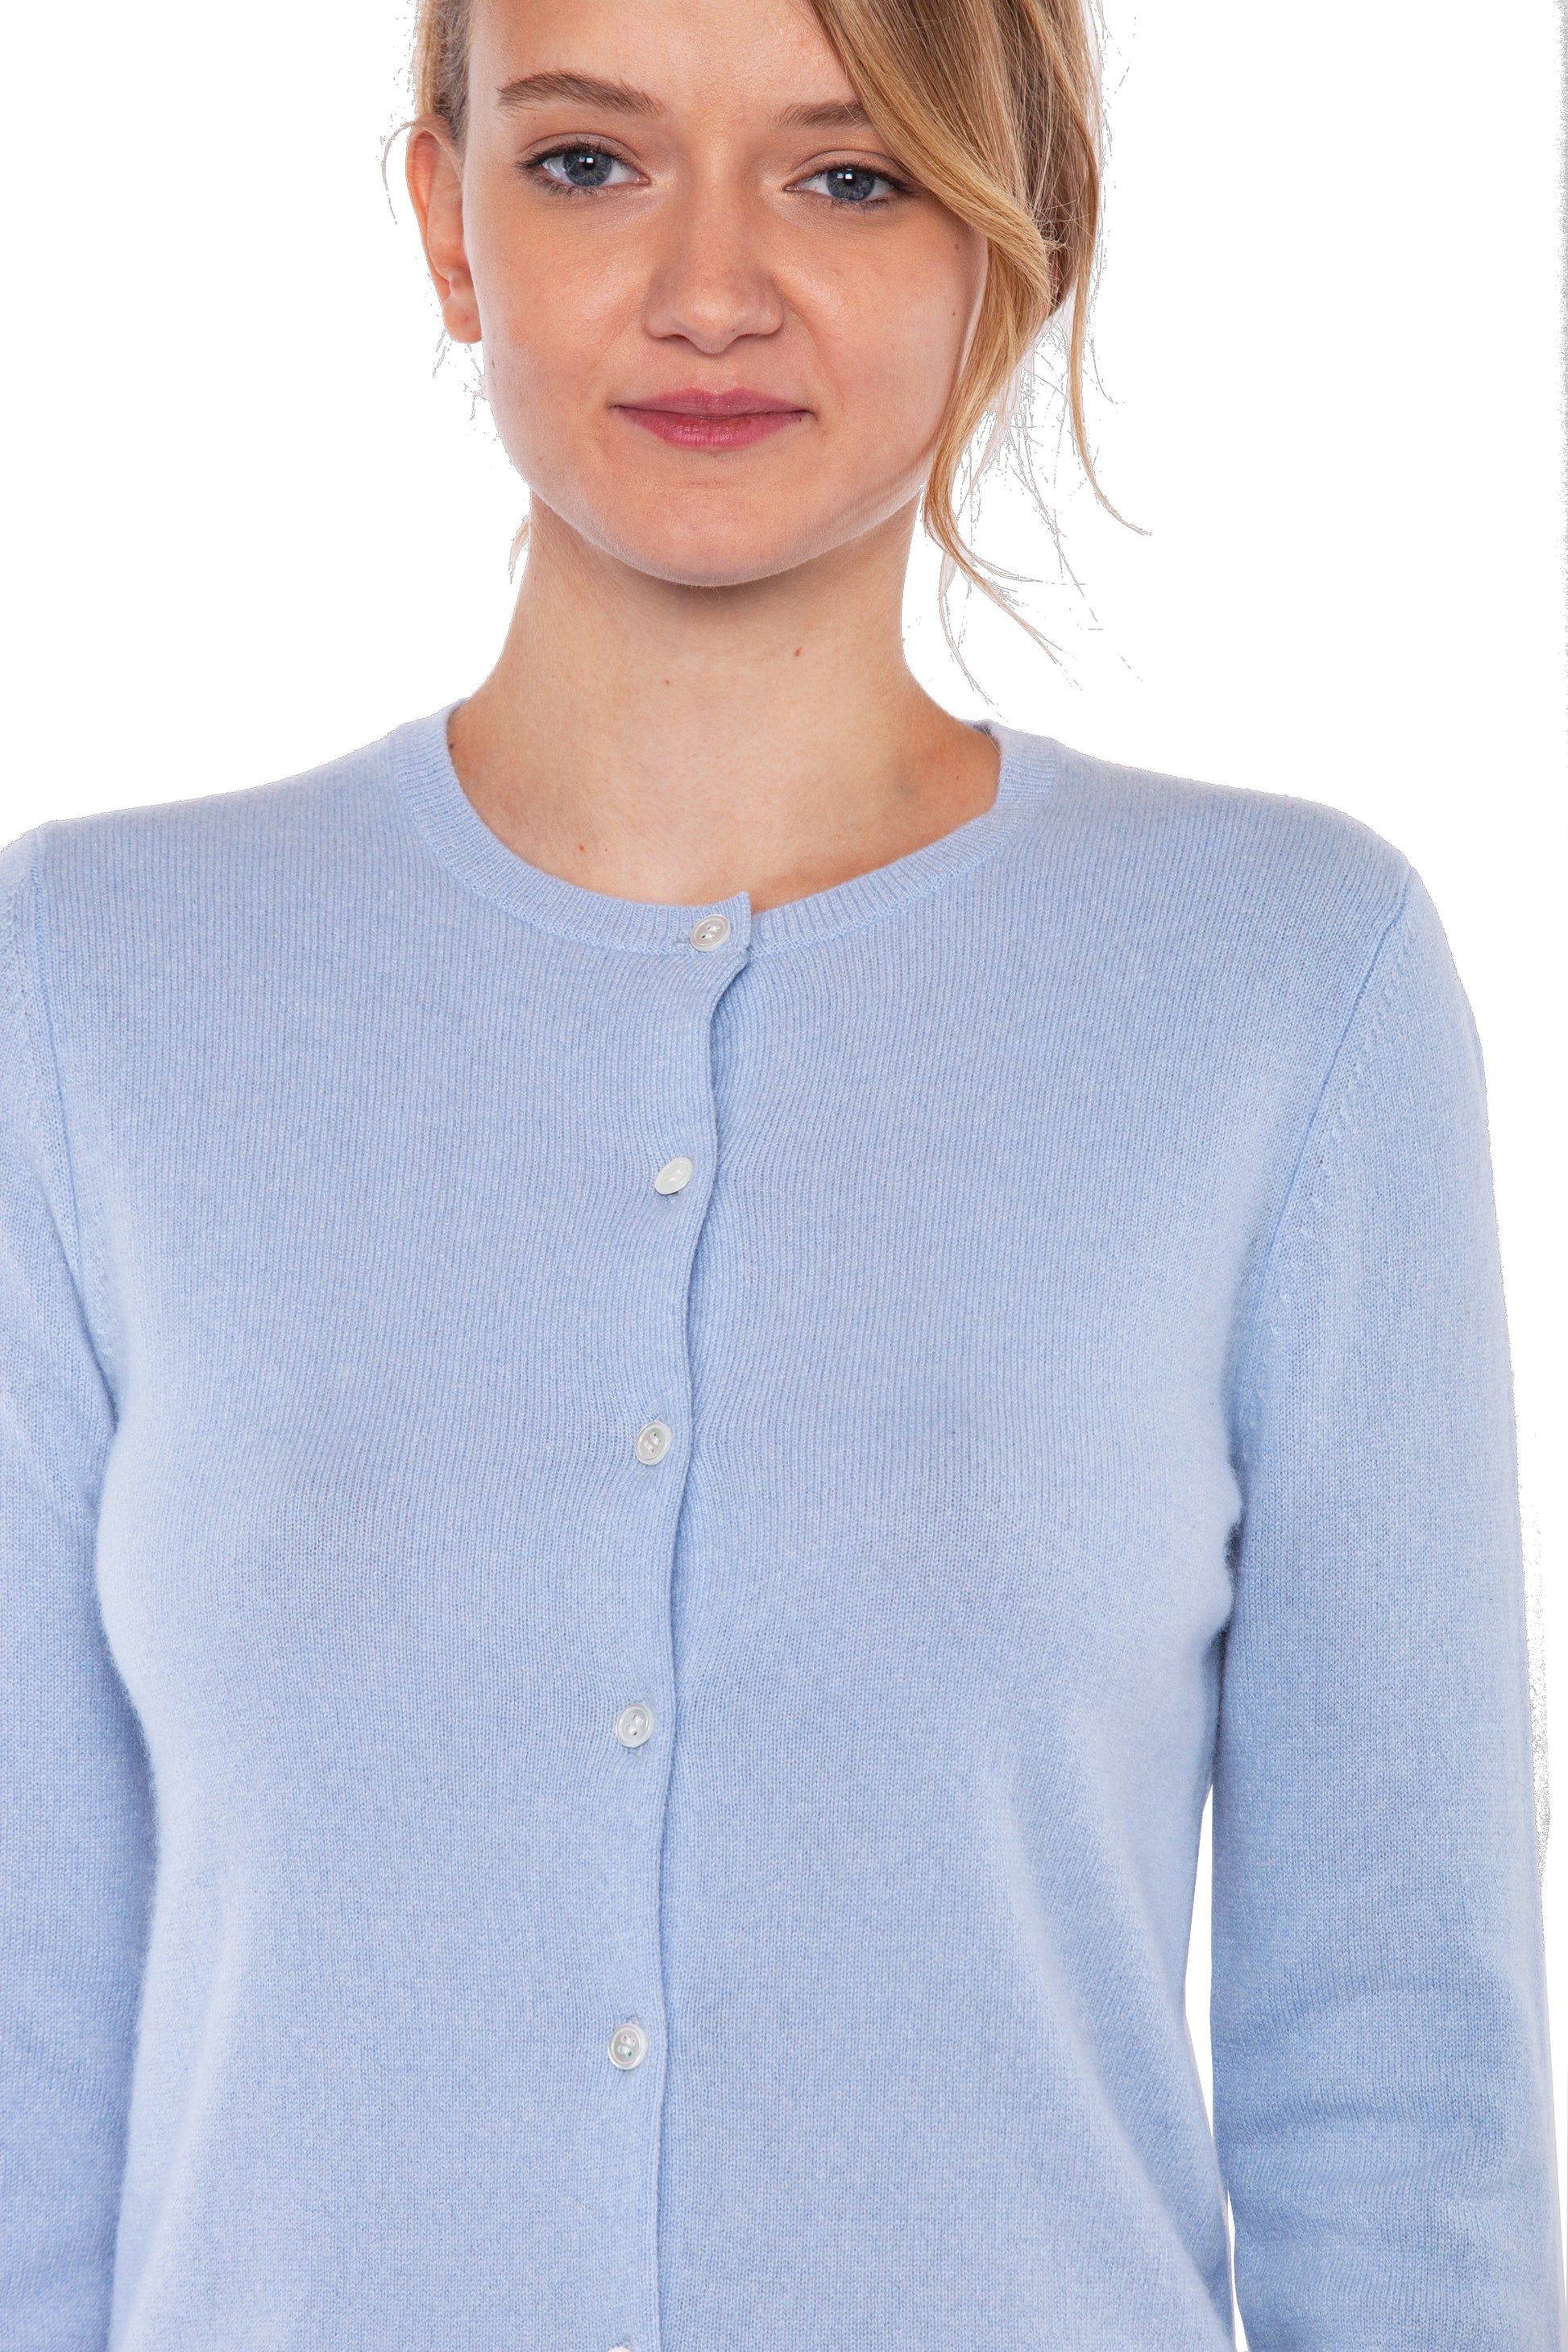 JENNIE LIU Women's 100% Cashmere Button Front Long Sleeve Crewneck Car –  JENNIE CASHMERE